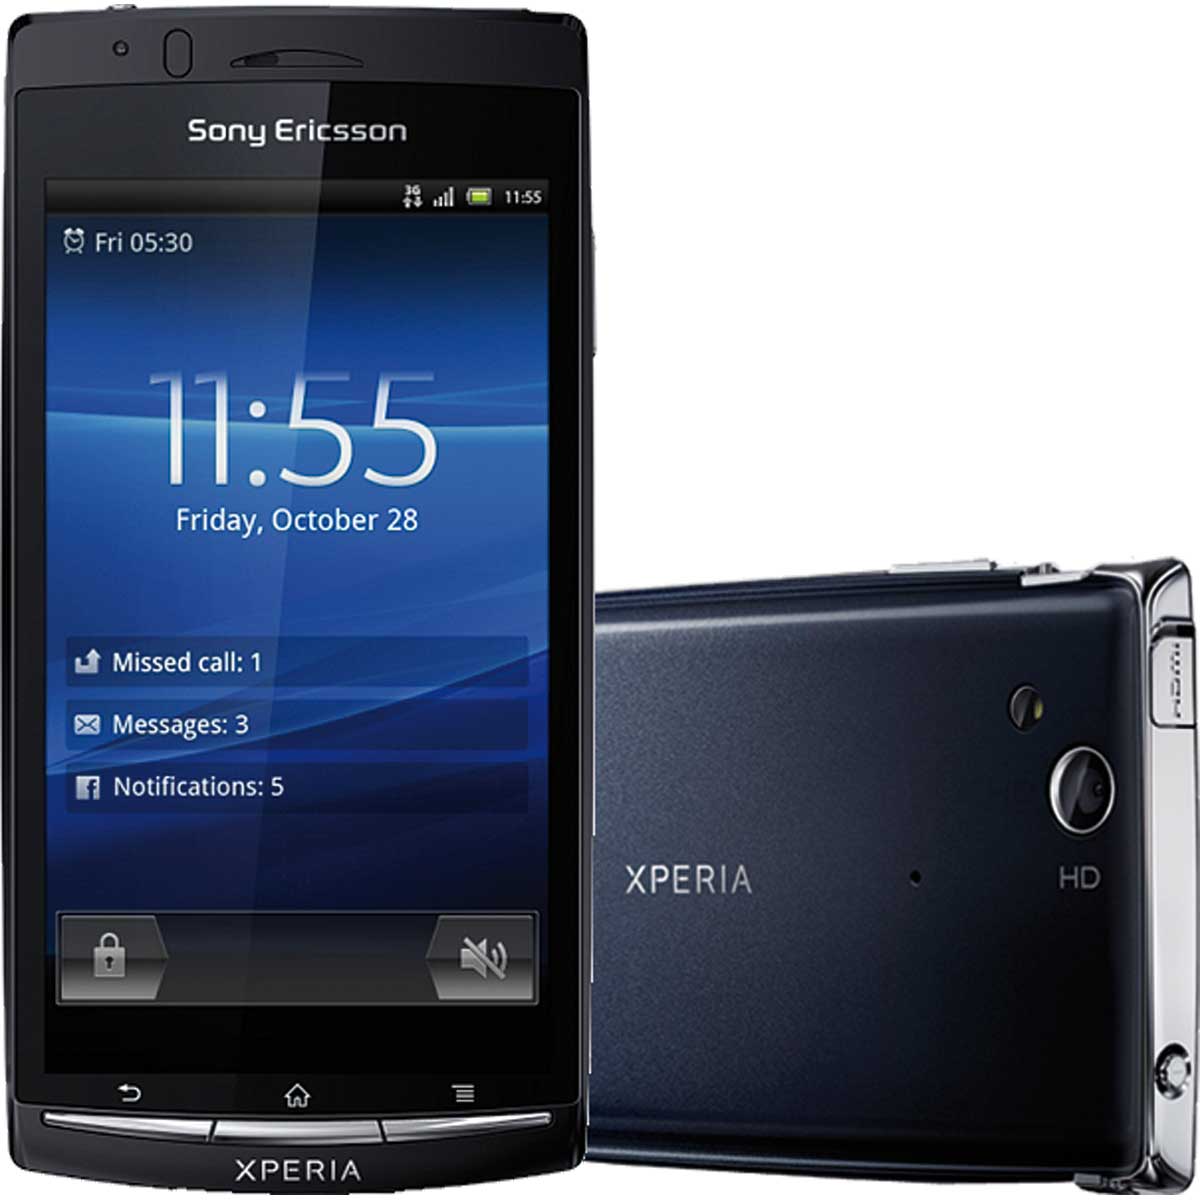 Звук xperia. Sony Arc s lt18i. Sony Ericsson Xperia Arc lt15i. Sony Ericsson Xperia Arc s lt18i. Sony Ericsson Arc s lt18i.